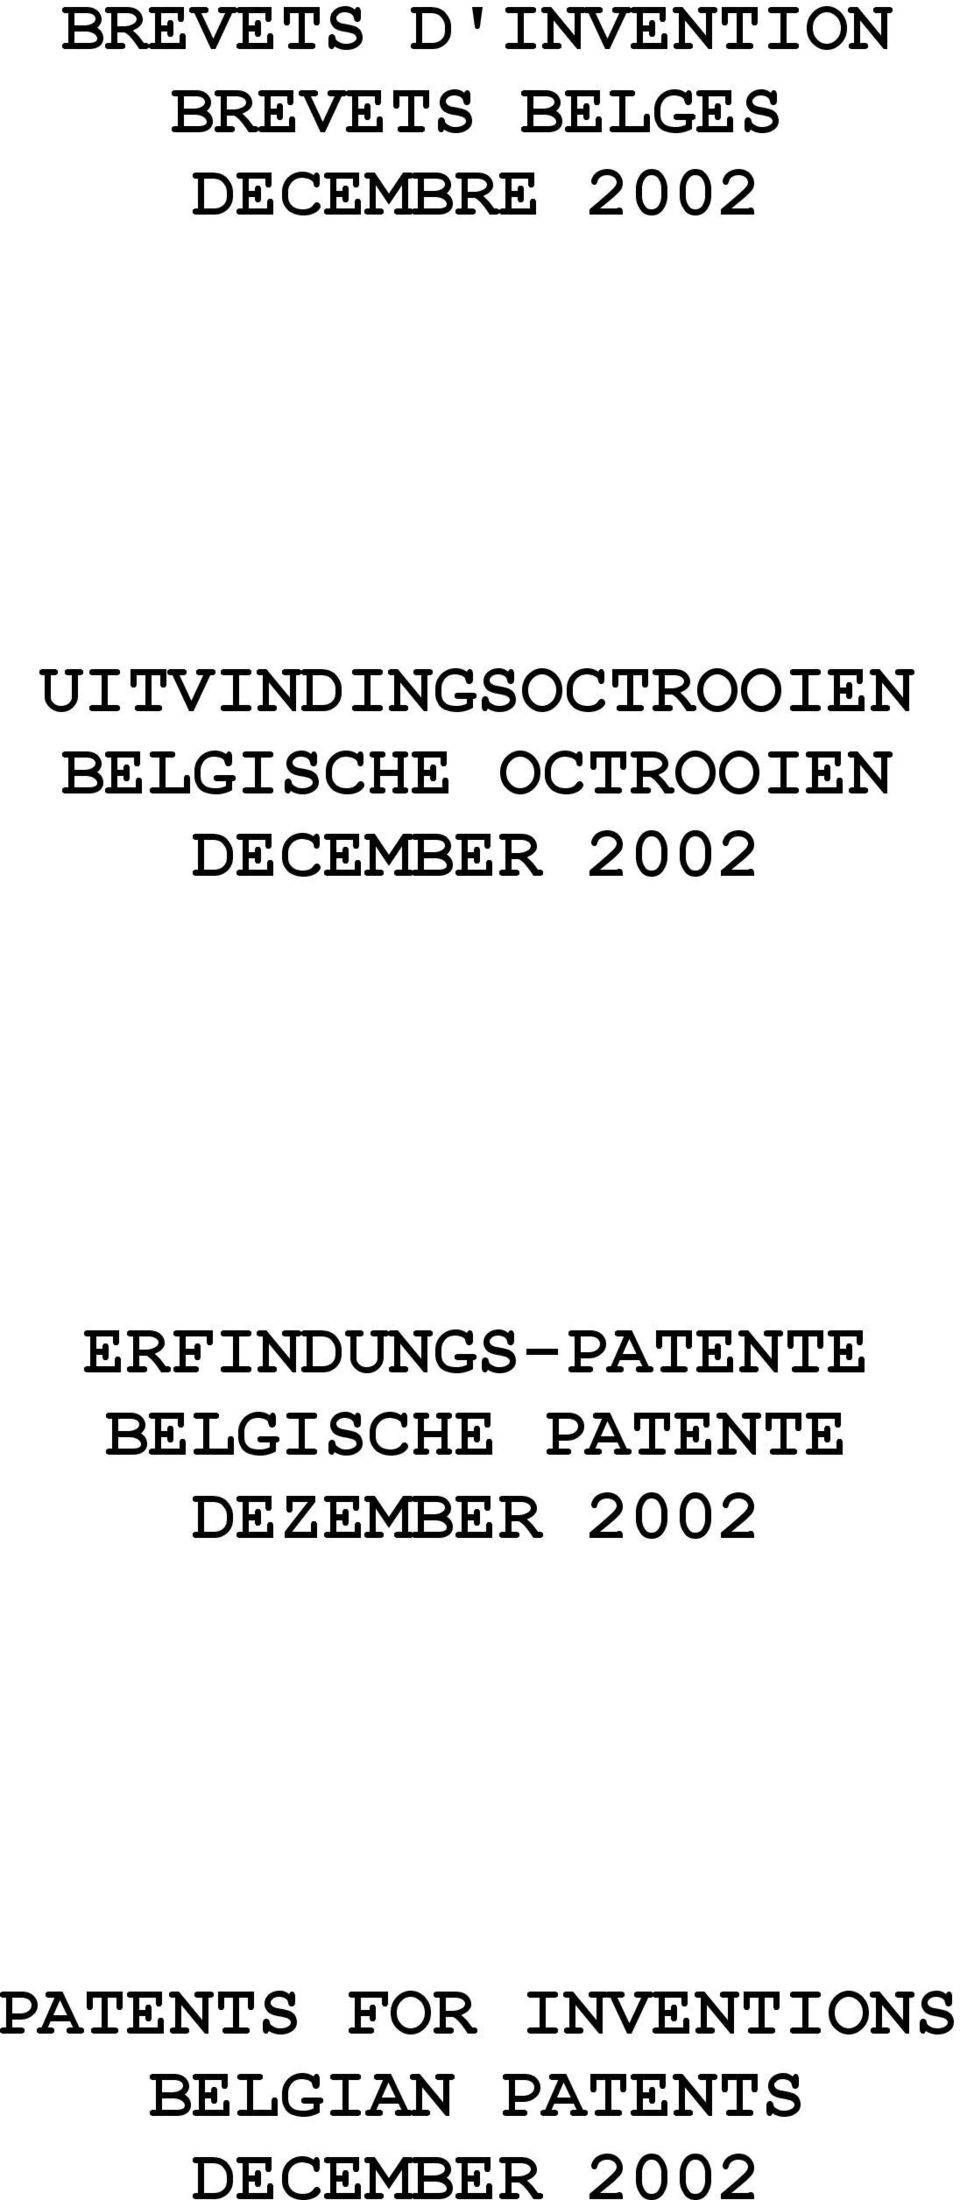 2002 ERFINDUNGS-PATENTE BELGISCHE PATENTE DEZEMBER